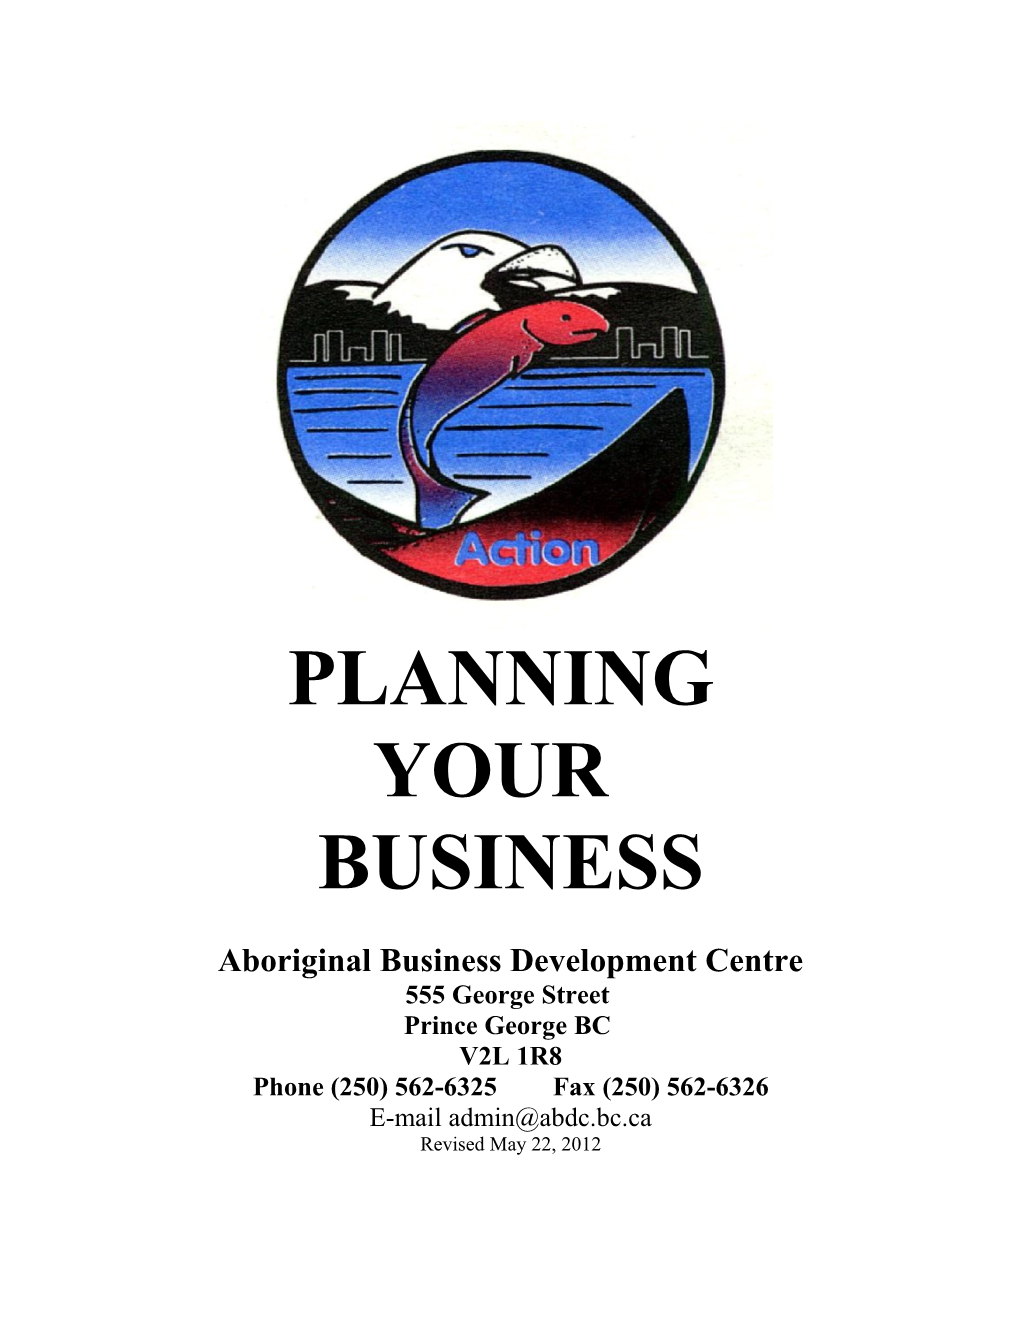 Aboriginal Business Development Centre